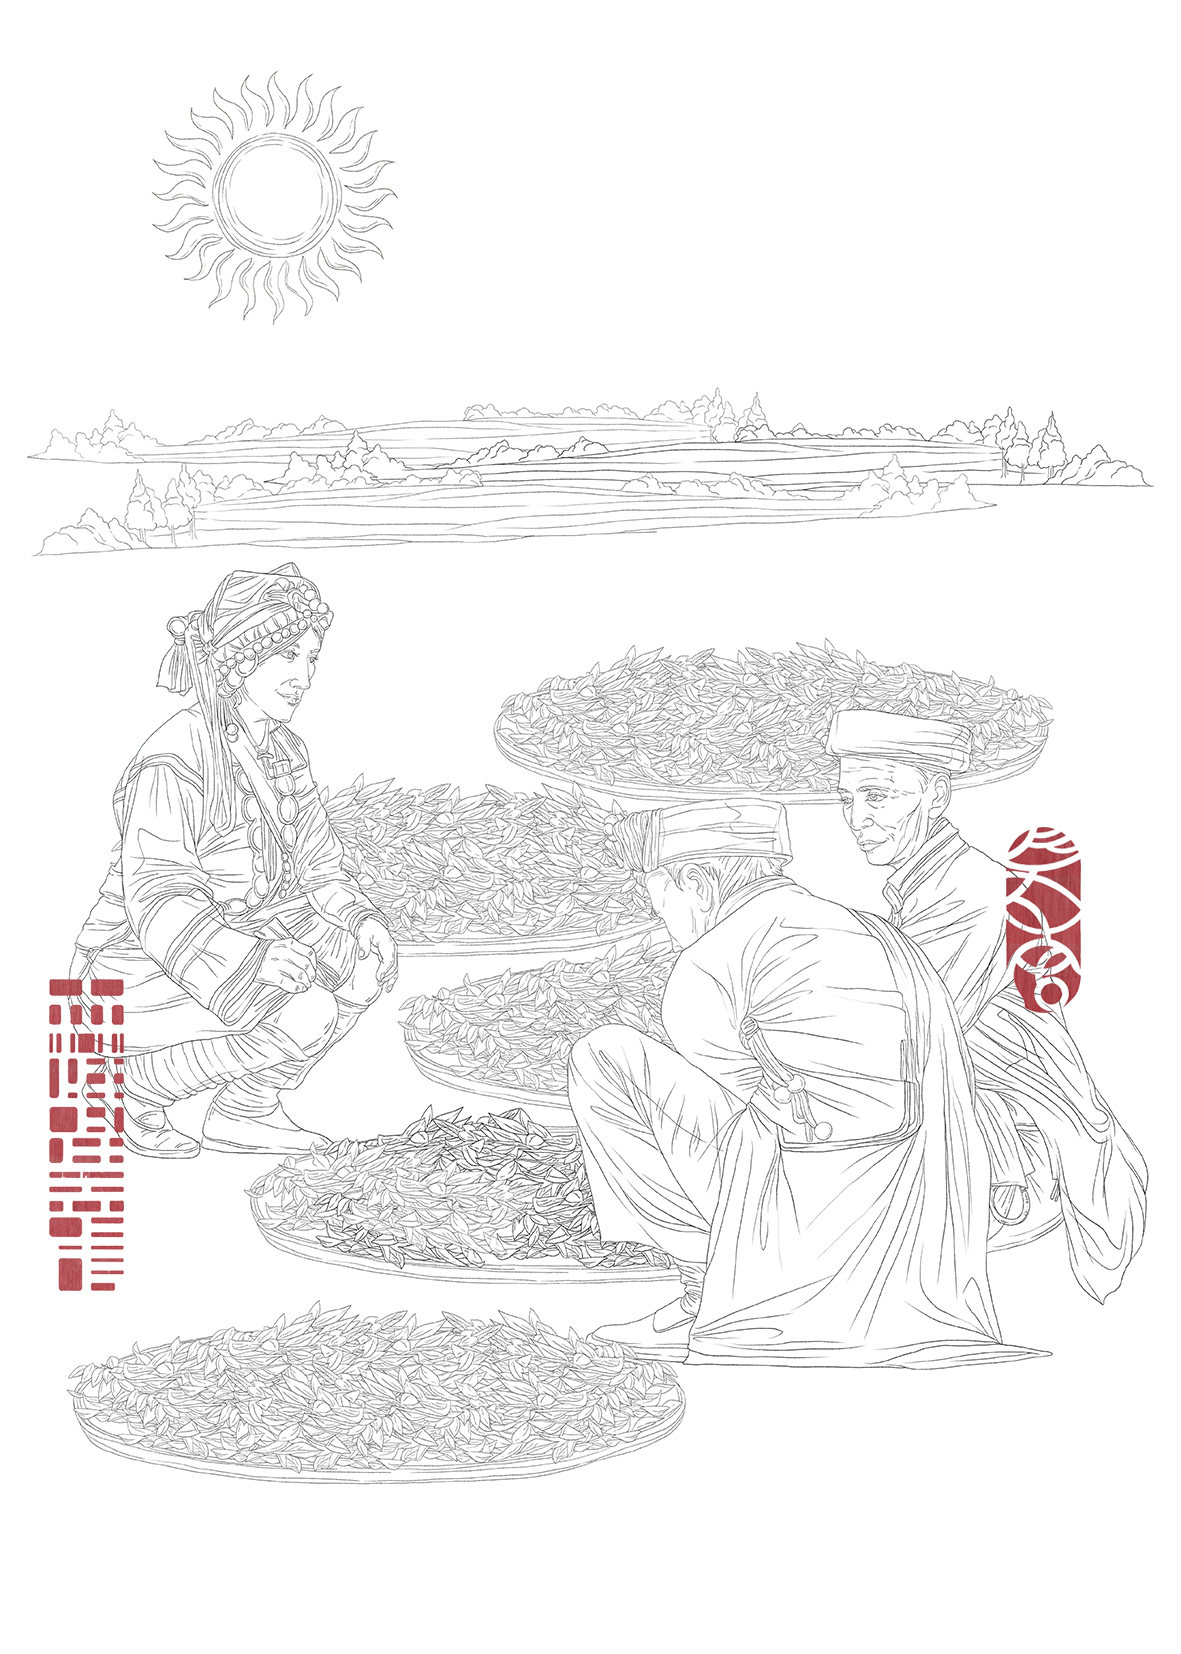 为其绘制了一套茶叶生产工艺流程的黑白线描插画作品